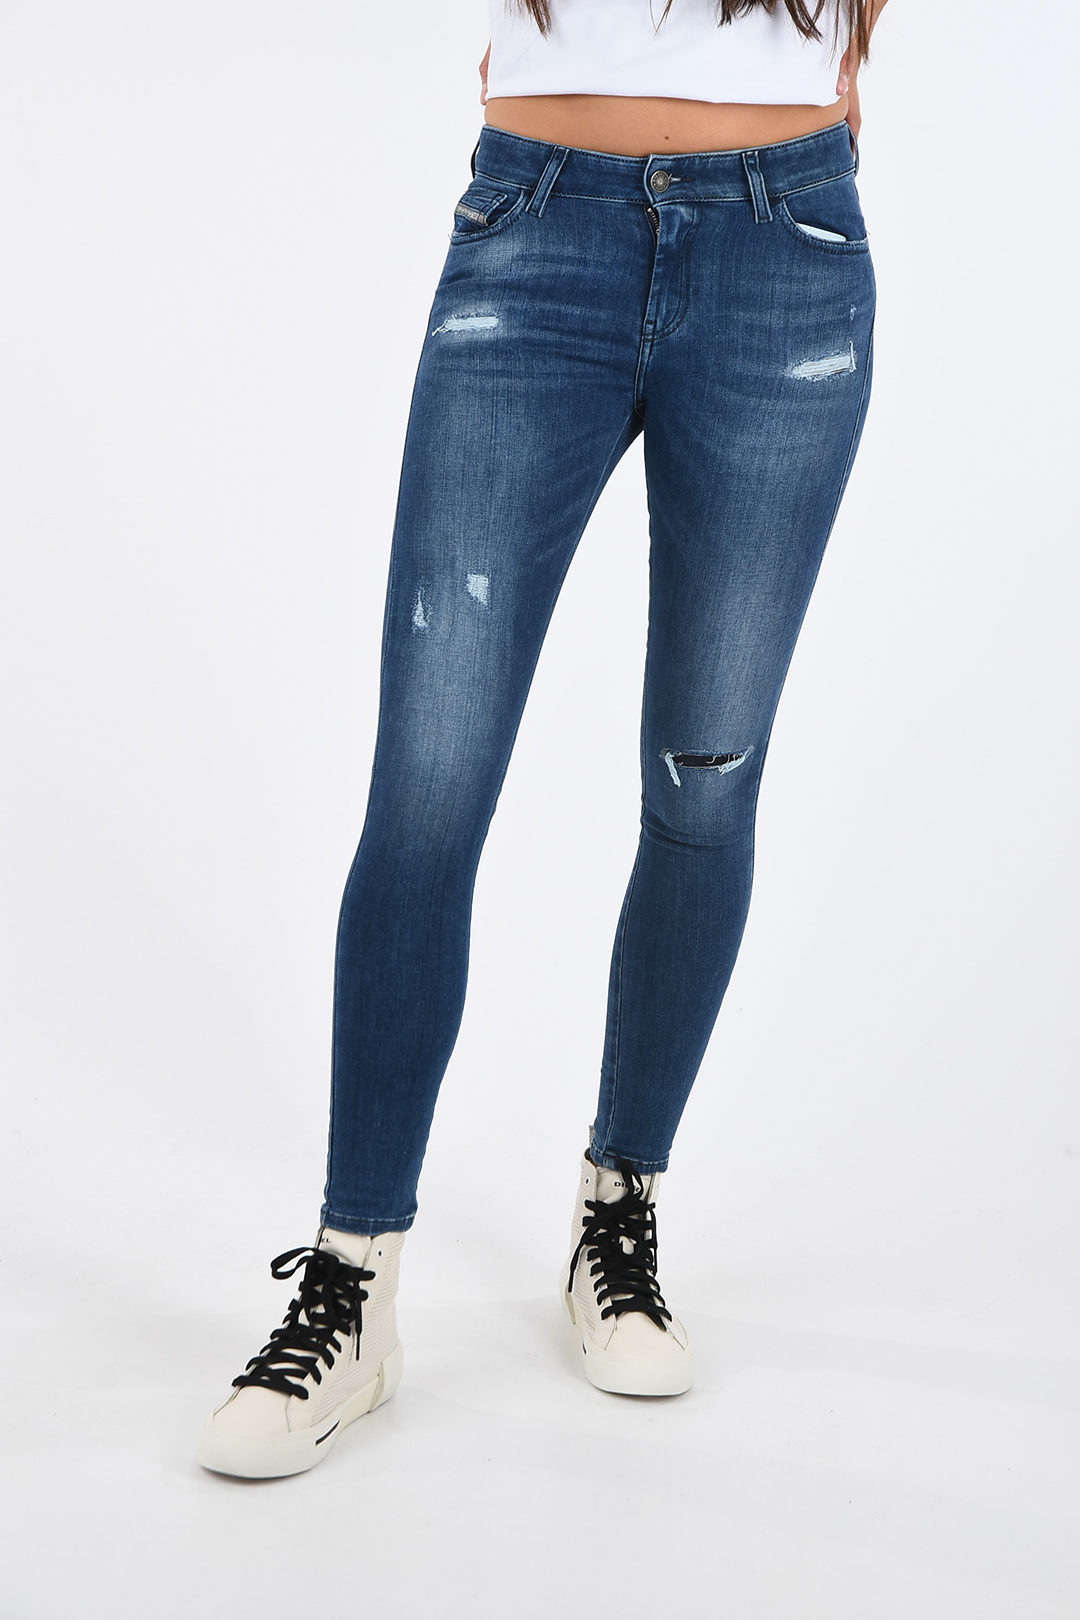 Diesel Super Skinny Fit SLANDY Distressed Jeans L30 women - Glamood Outlet